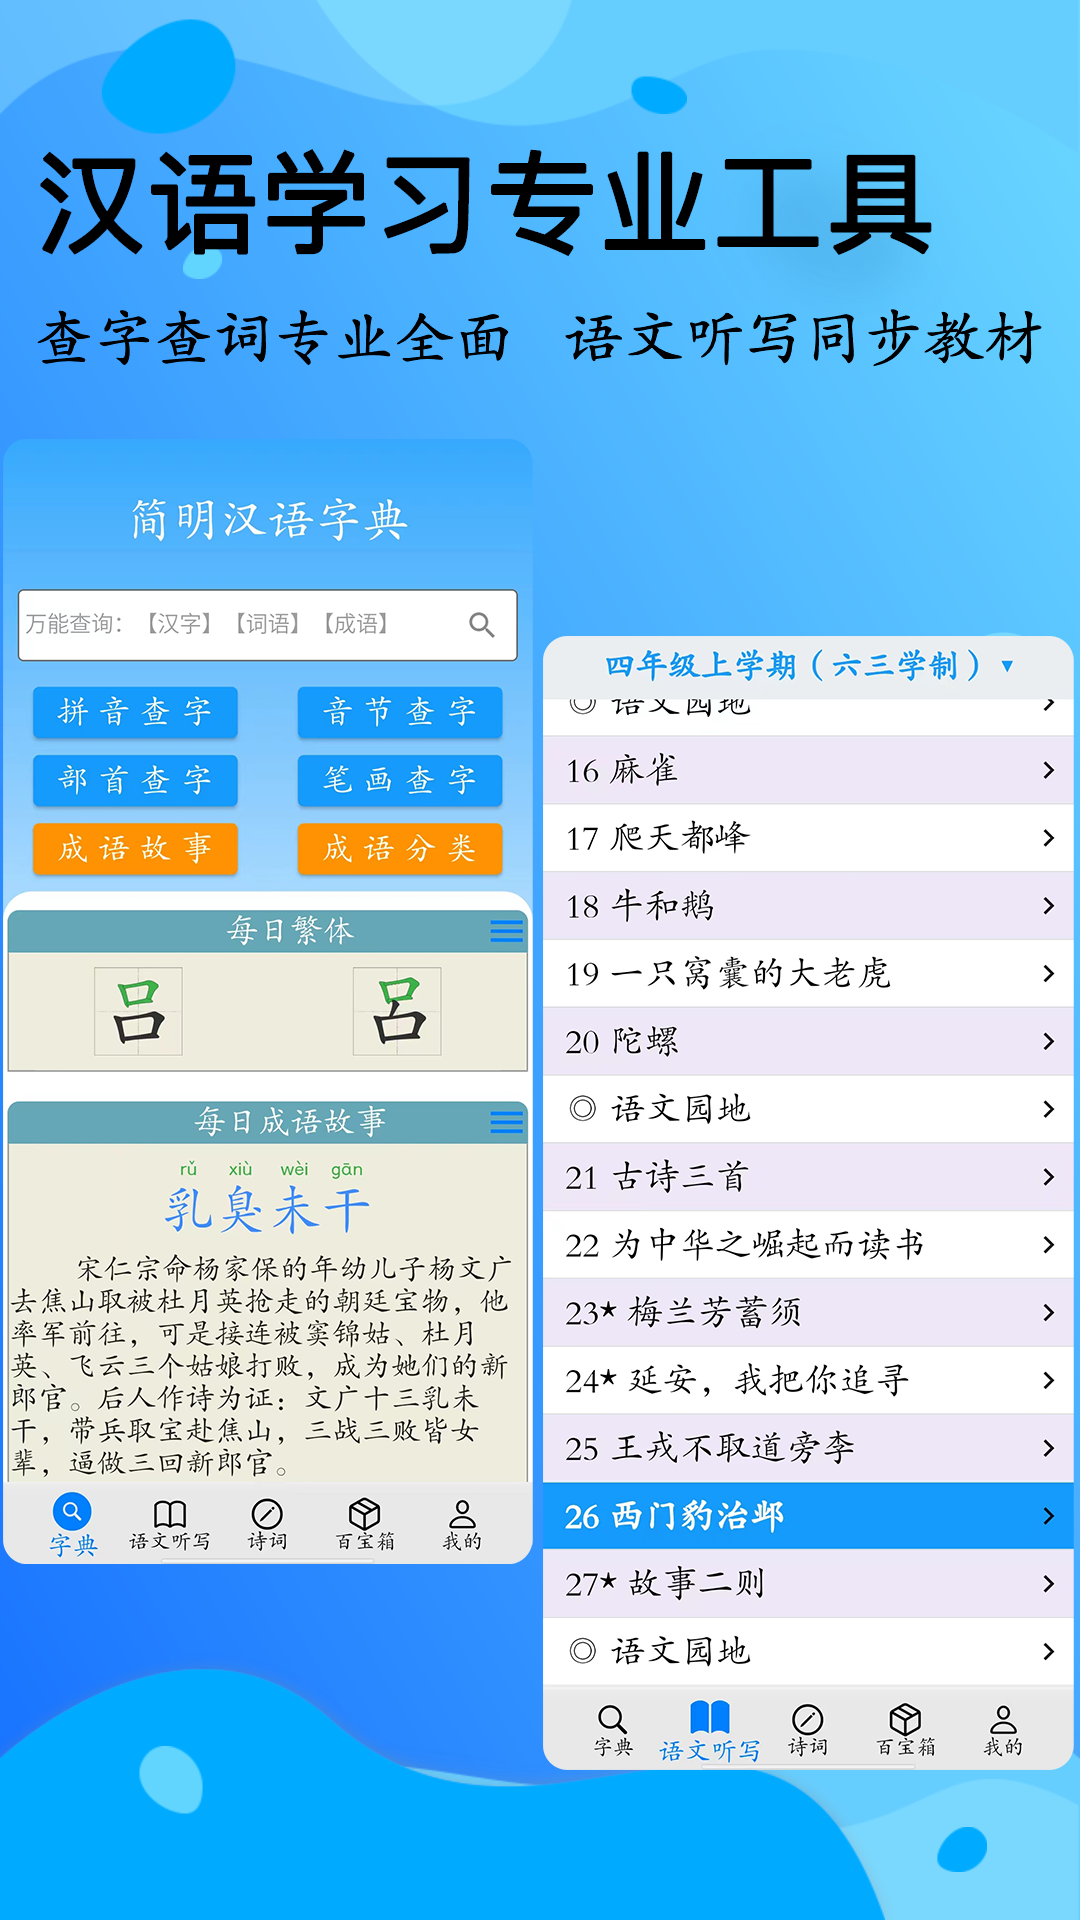 简明汉语字典